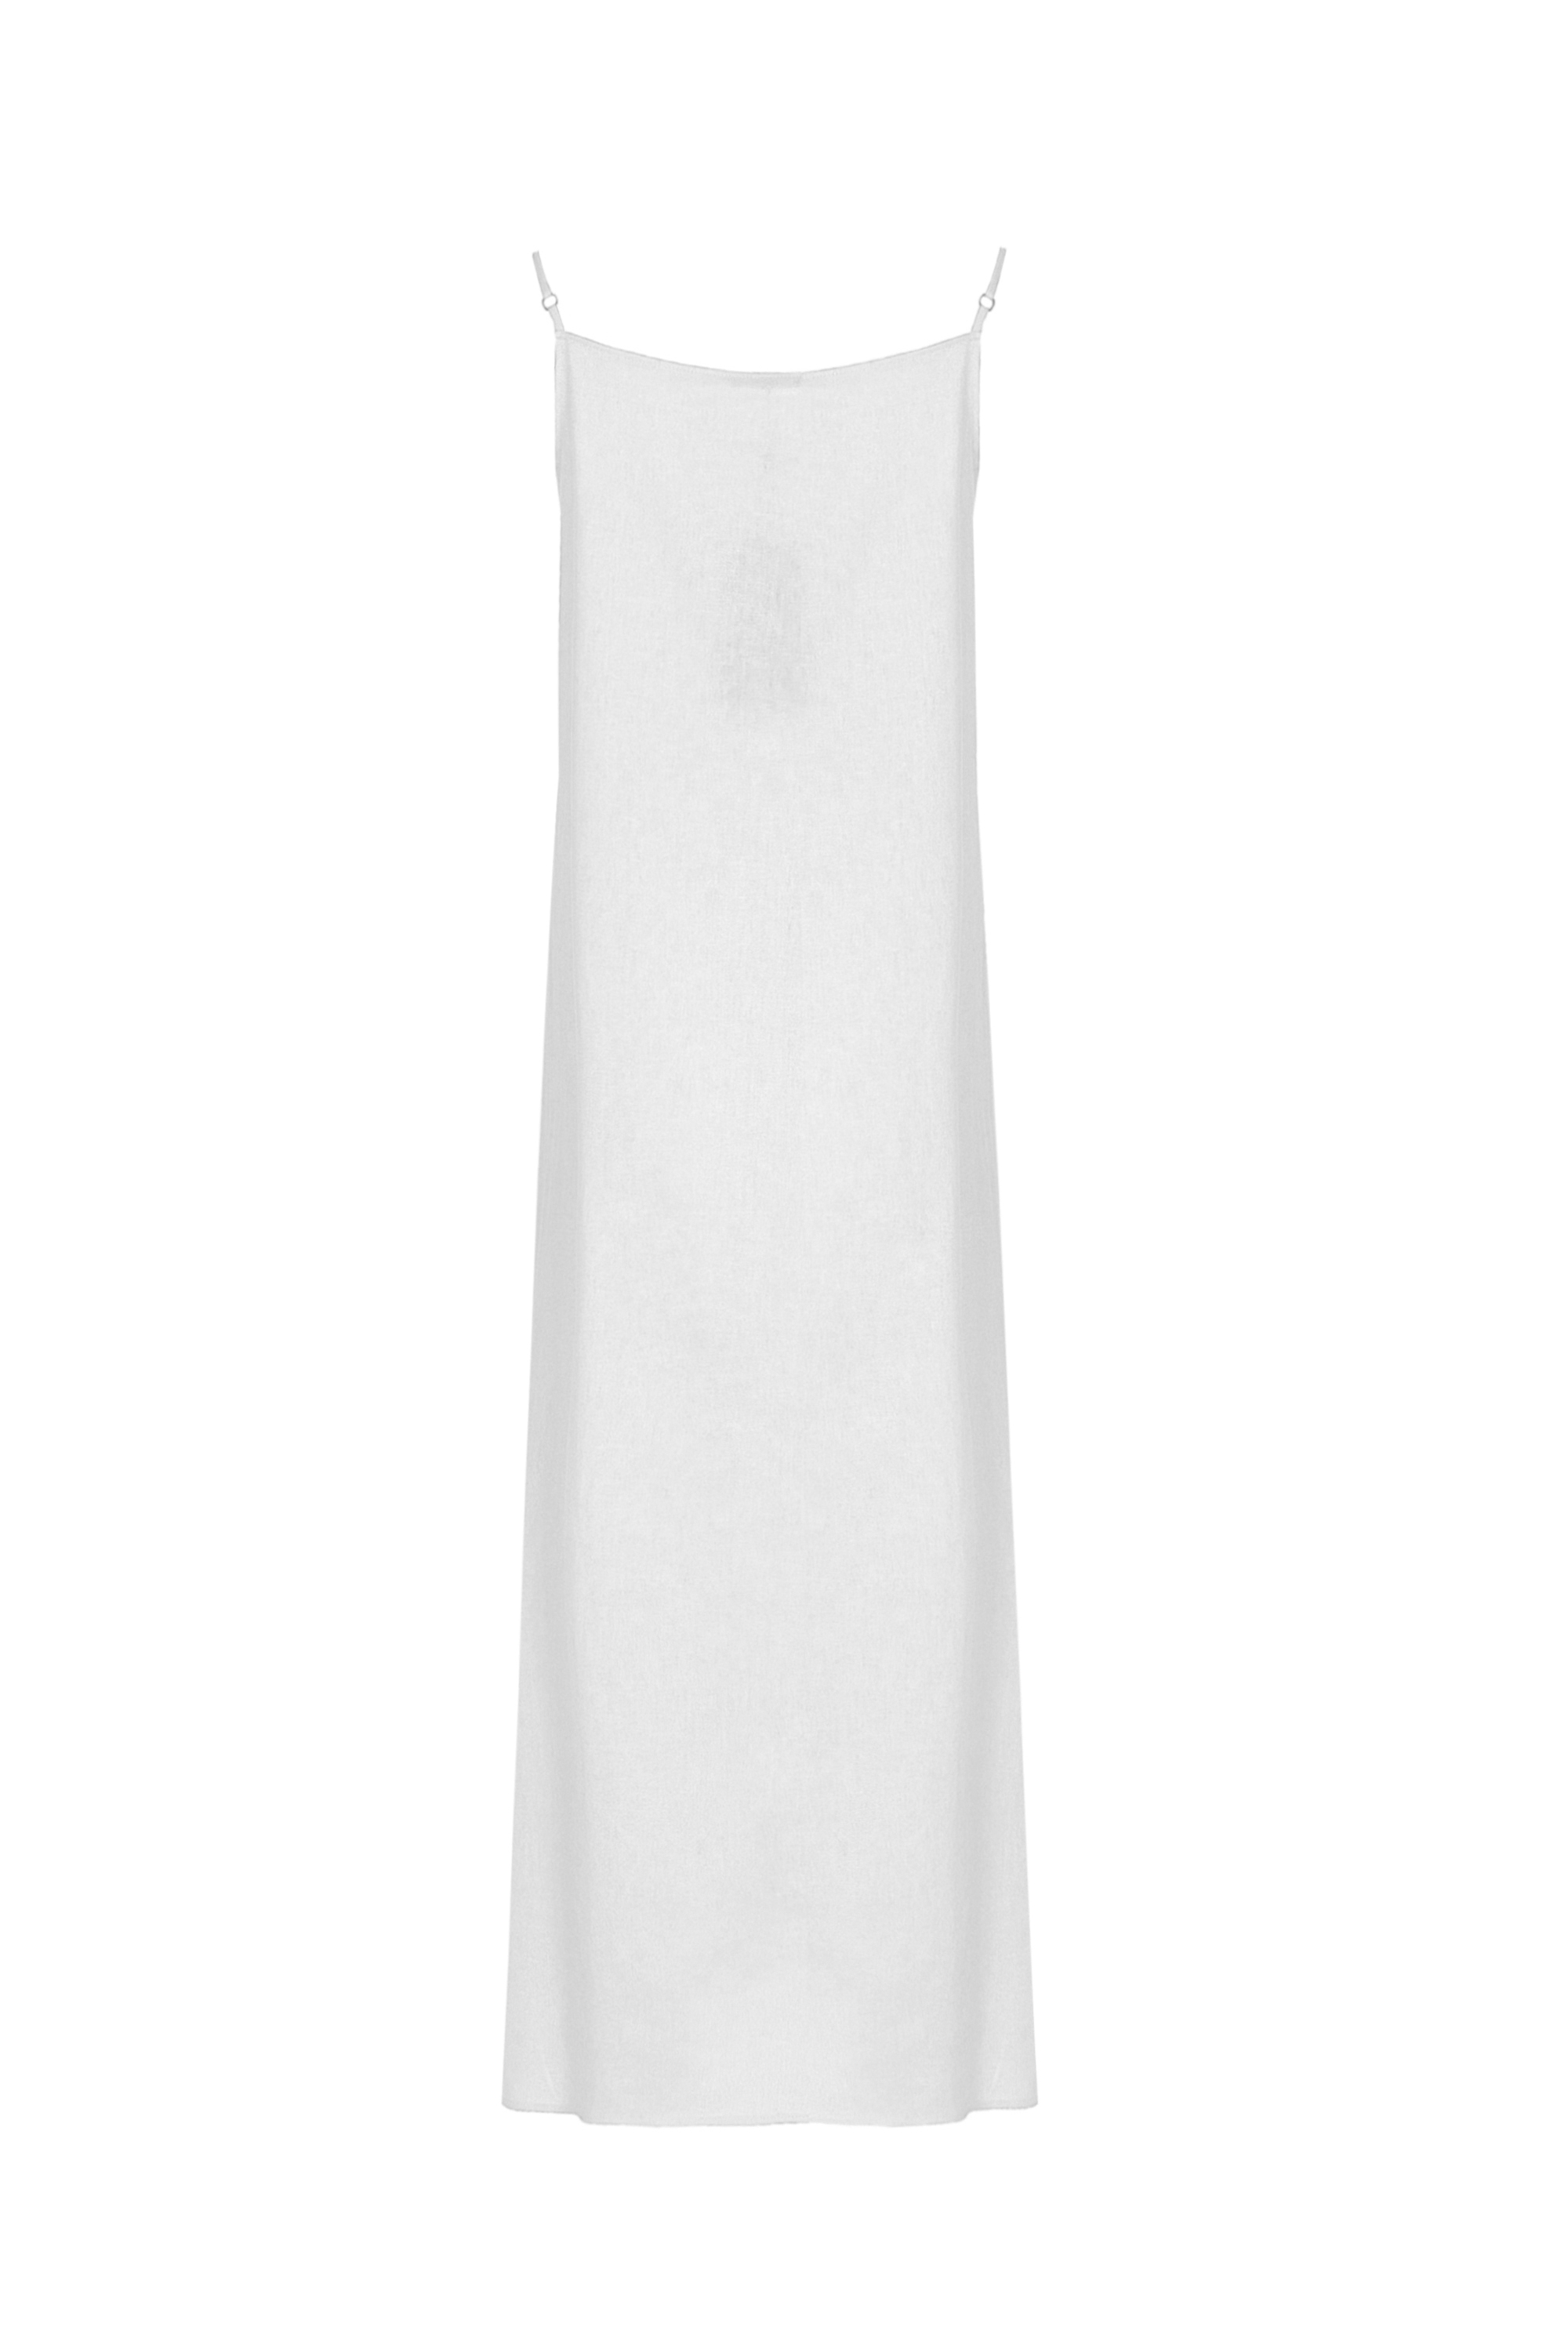 Платье женское 5К-12506-1